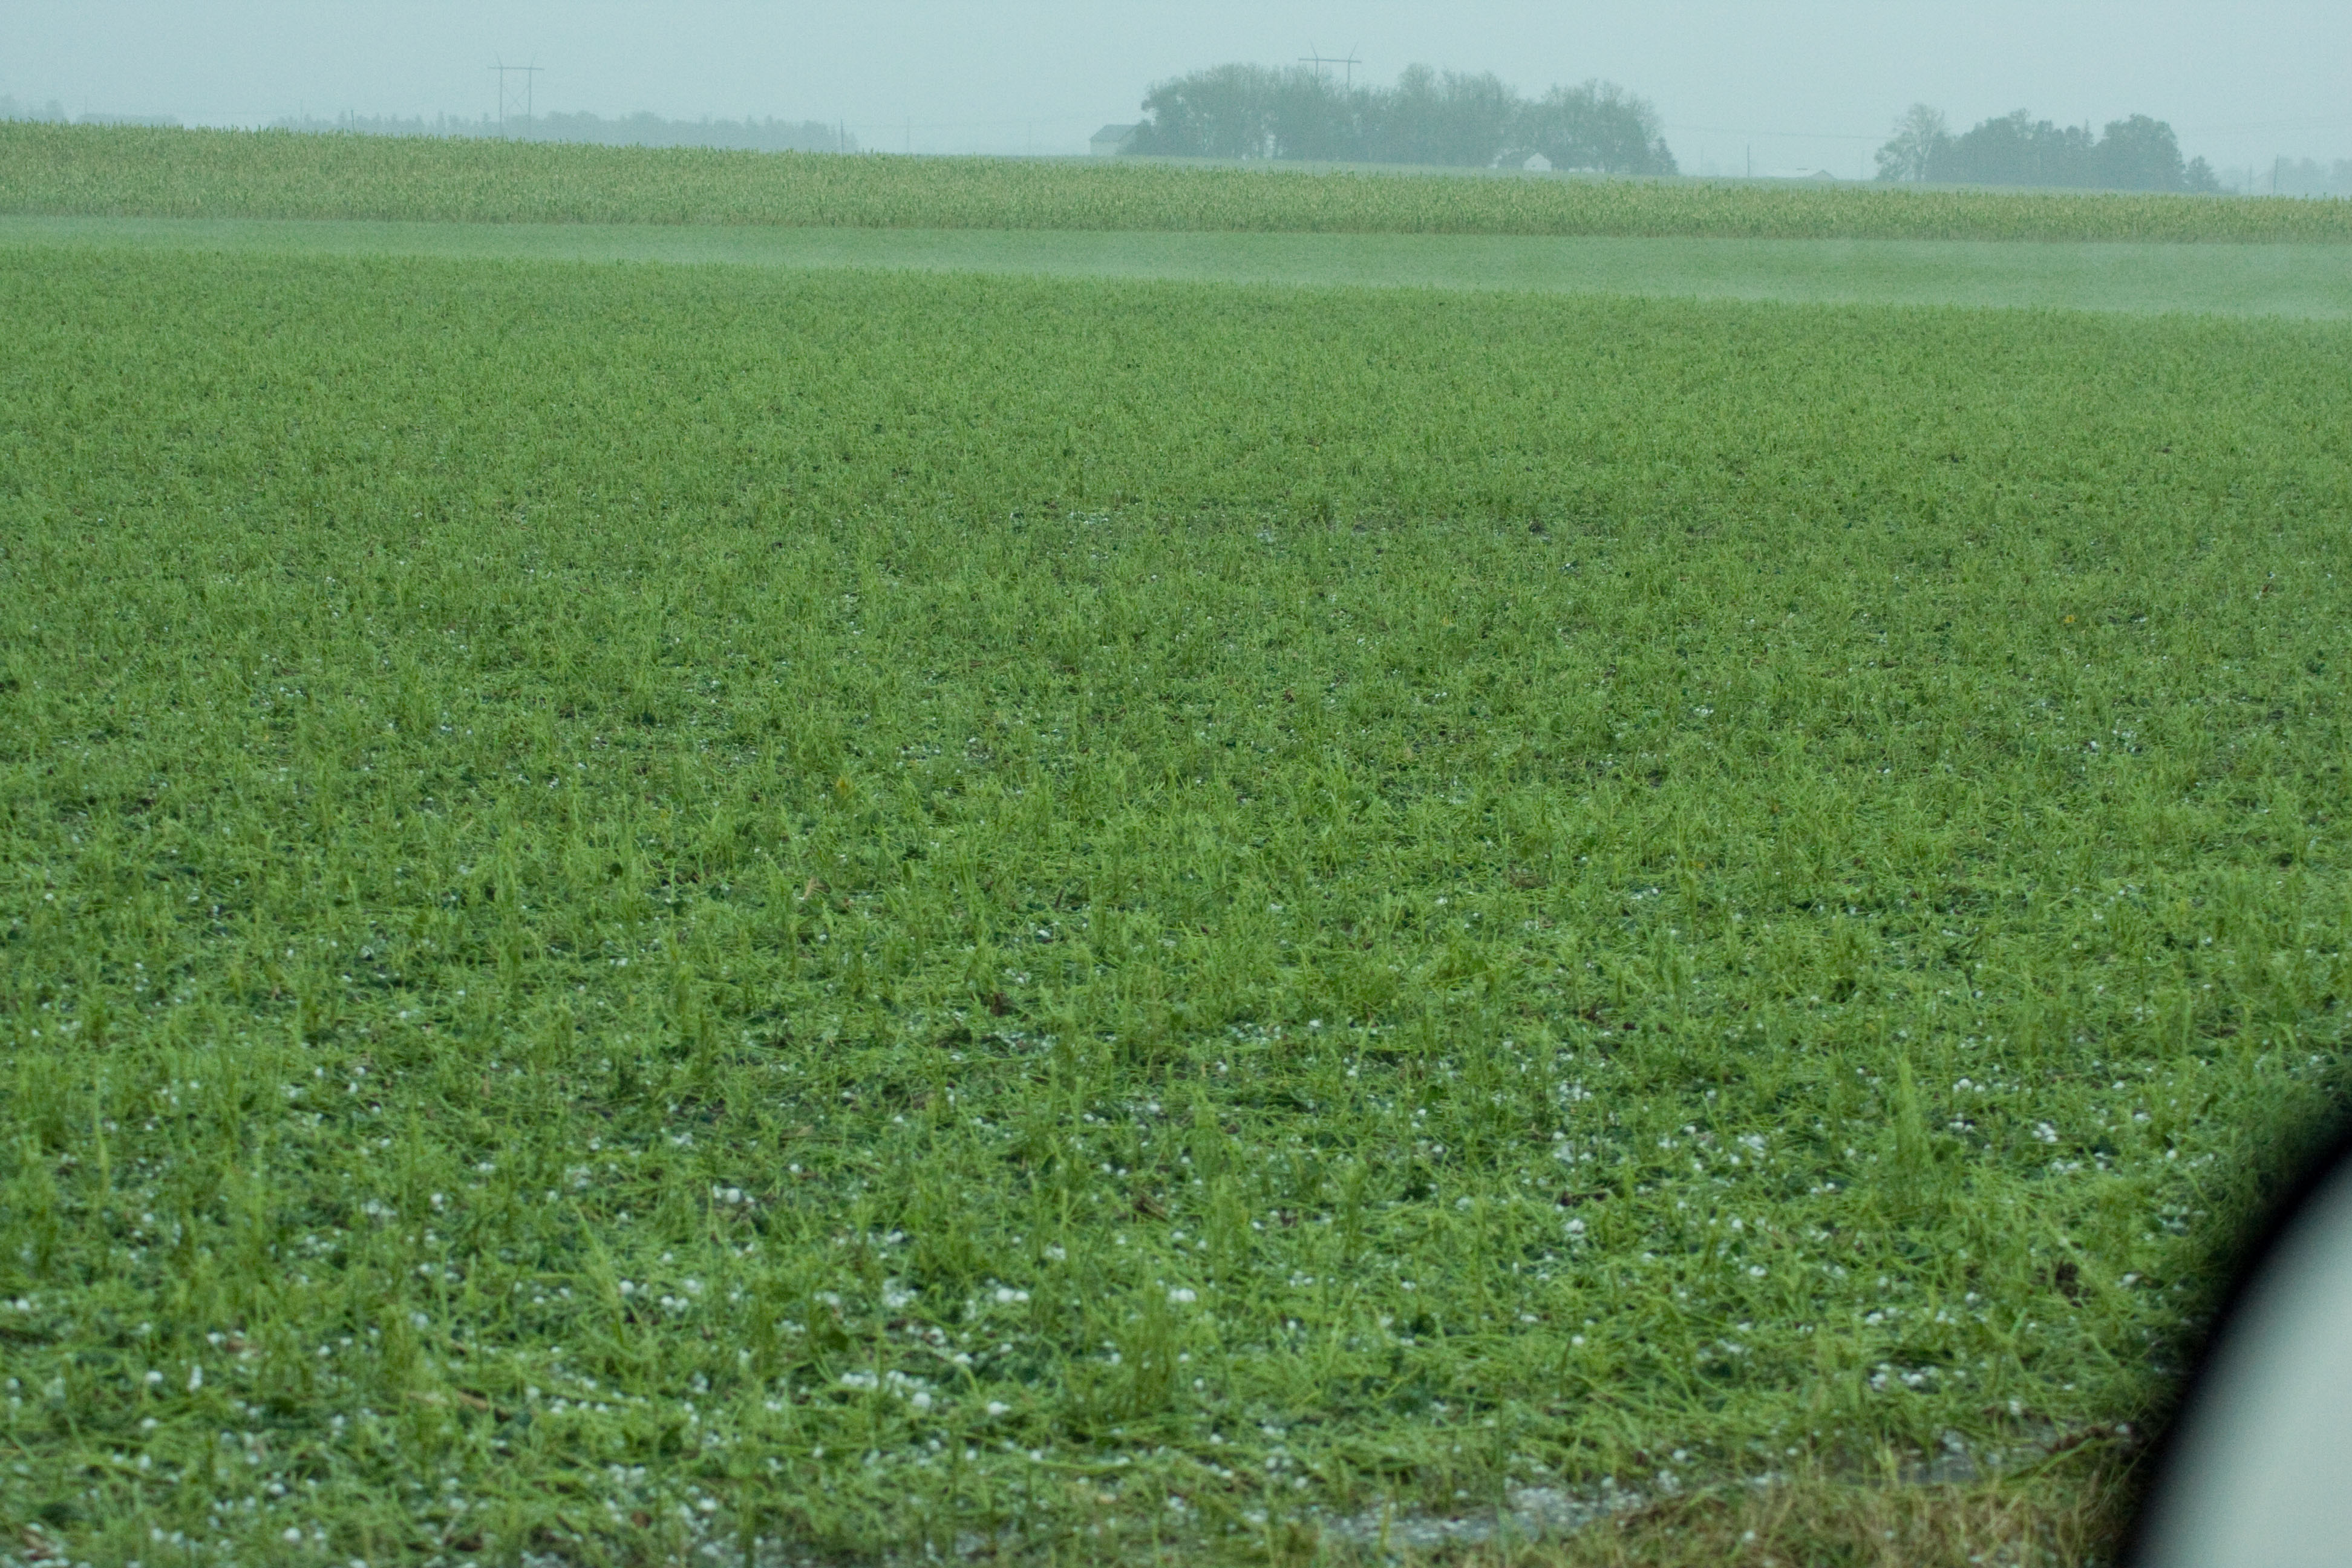 Bean field near Callender, Iowa